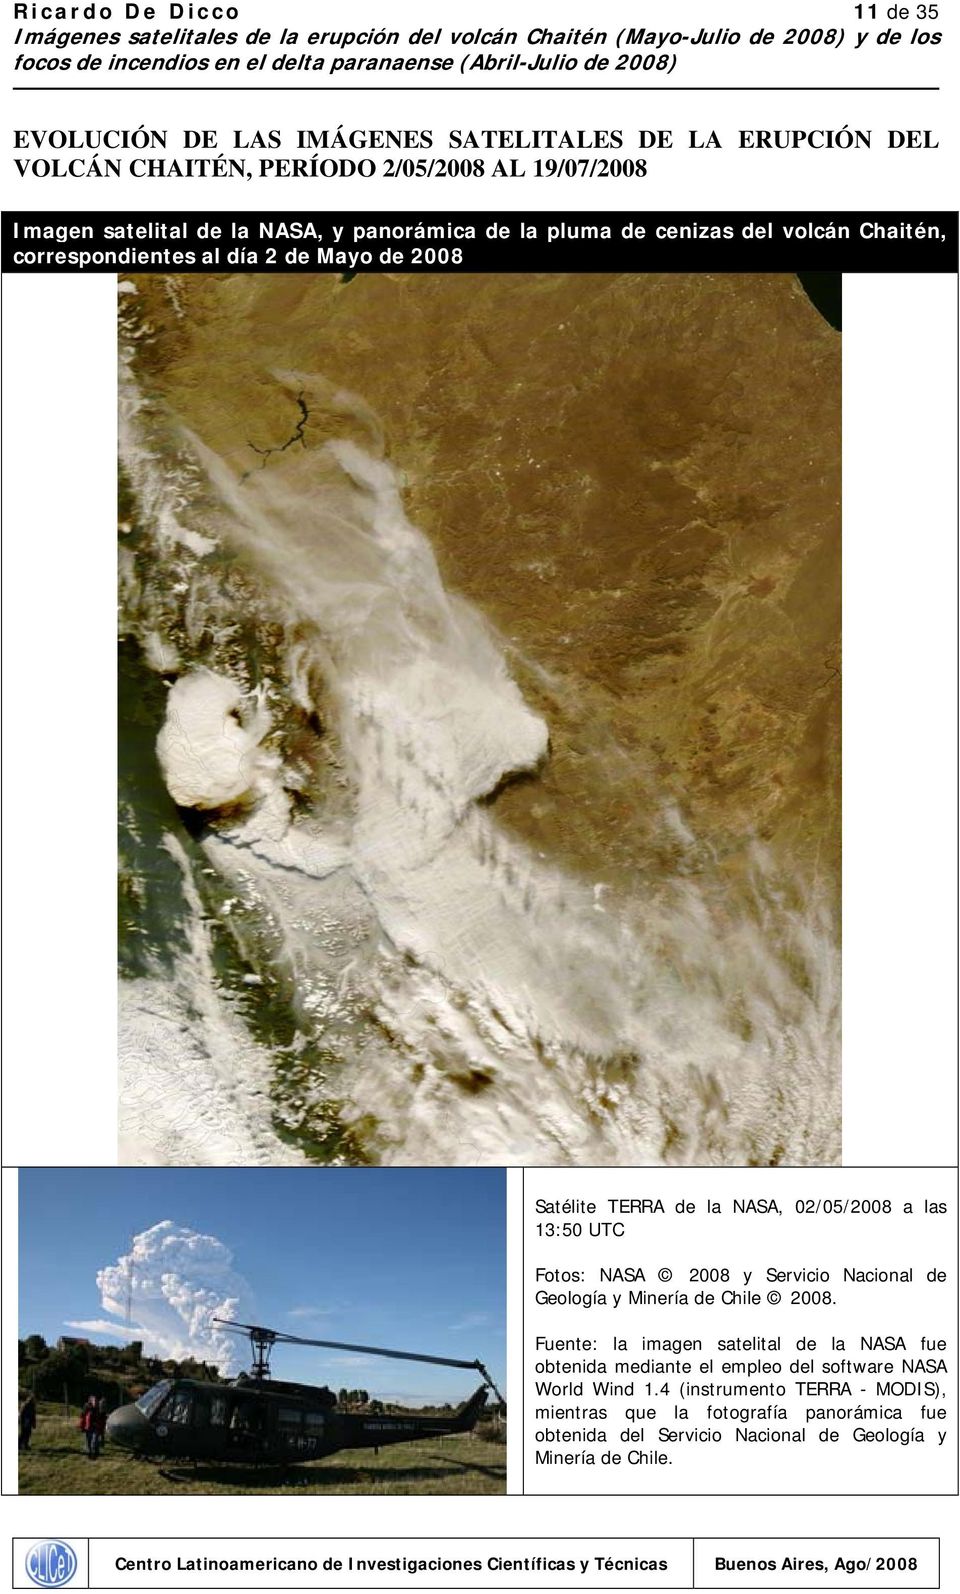 Fotos: NASA 2008 y Servicio Nacional de Geología y Minería de Chile 2008.